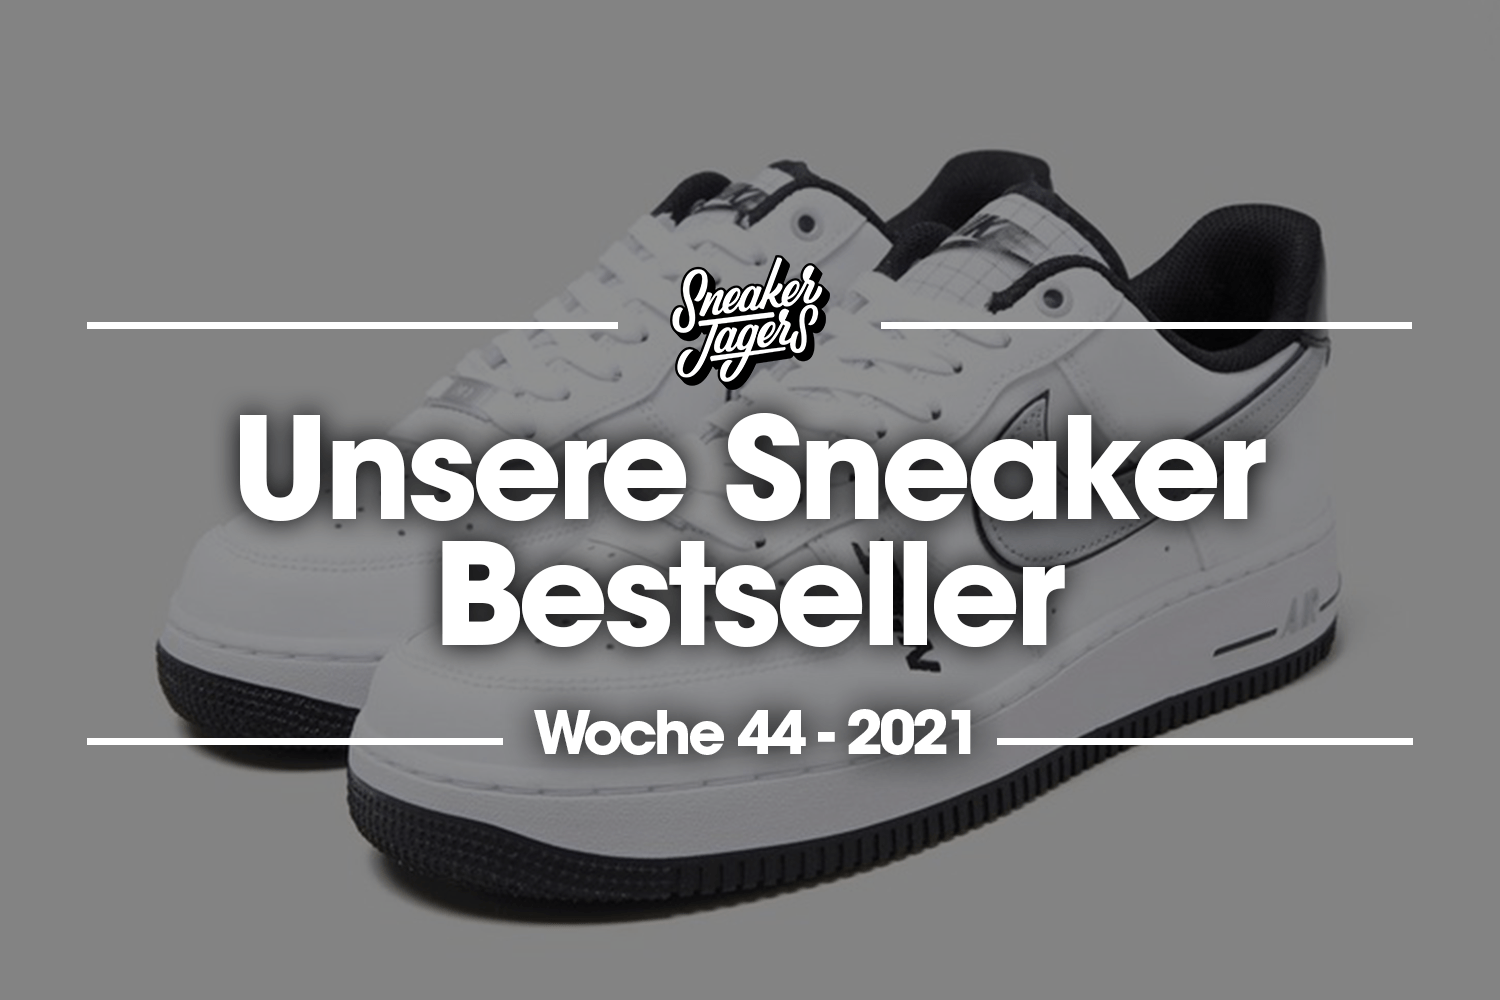 Unsere Sneaker Bestseller - Woche 44 - Das ist im Trend